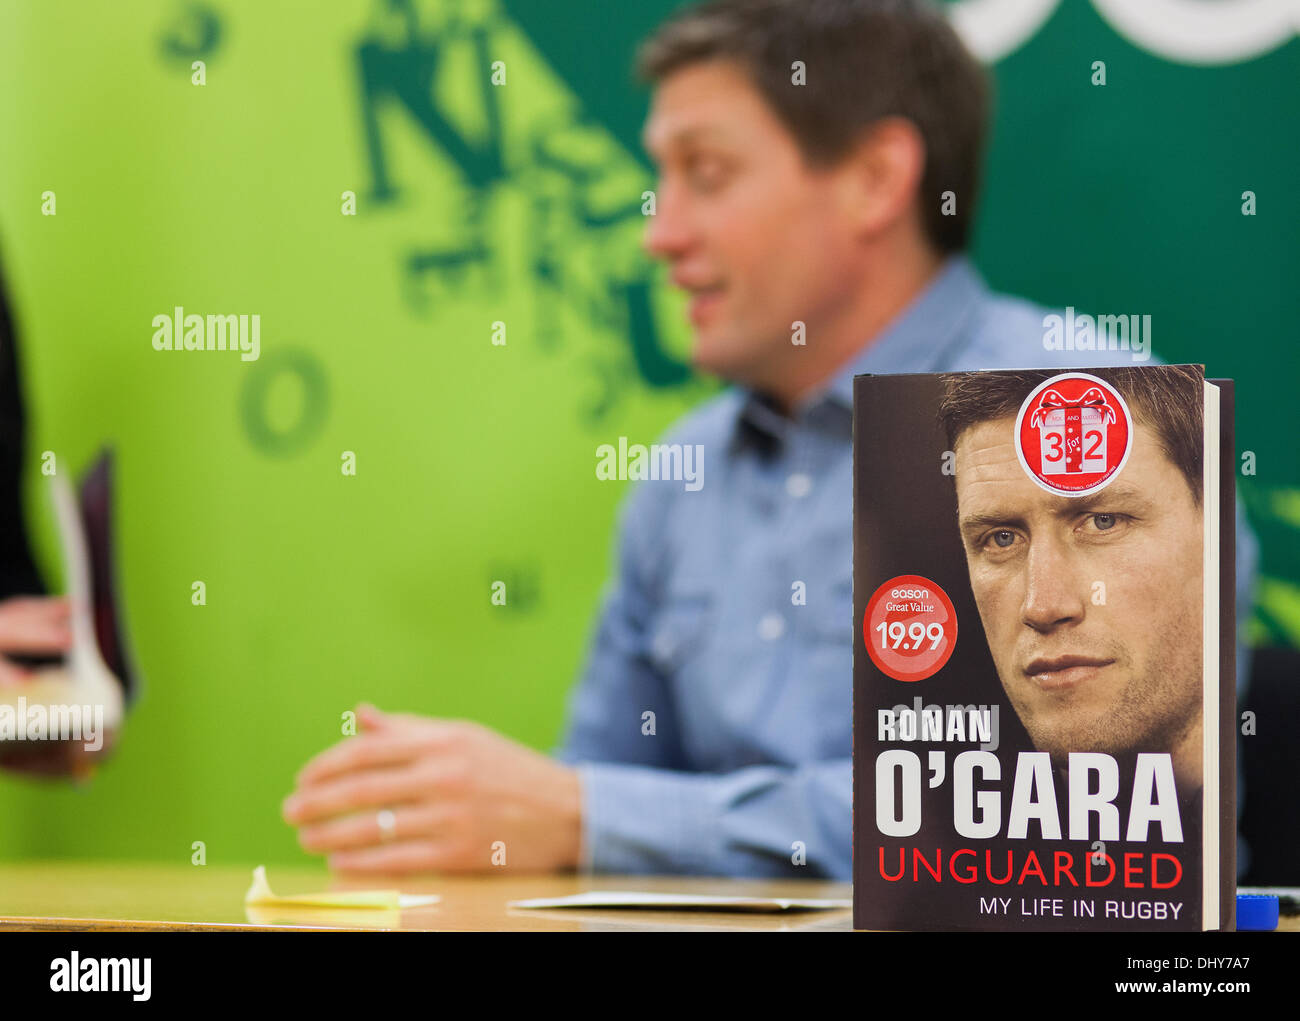 Ronan o ' Gara unterschreibt Exemplare seines zweiten Buches in Dublin, Irland Stockfoto